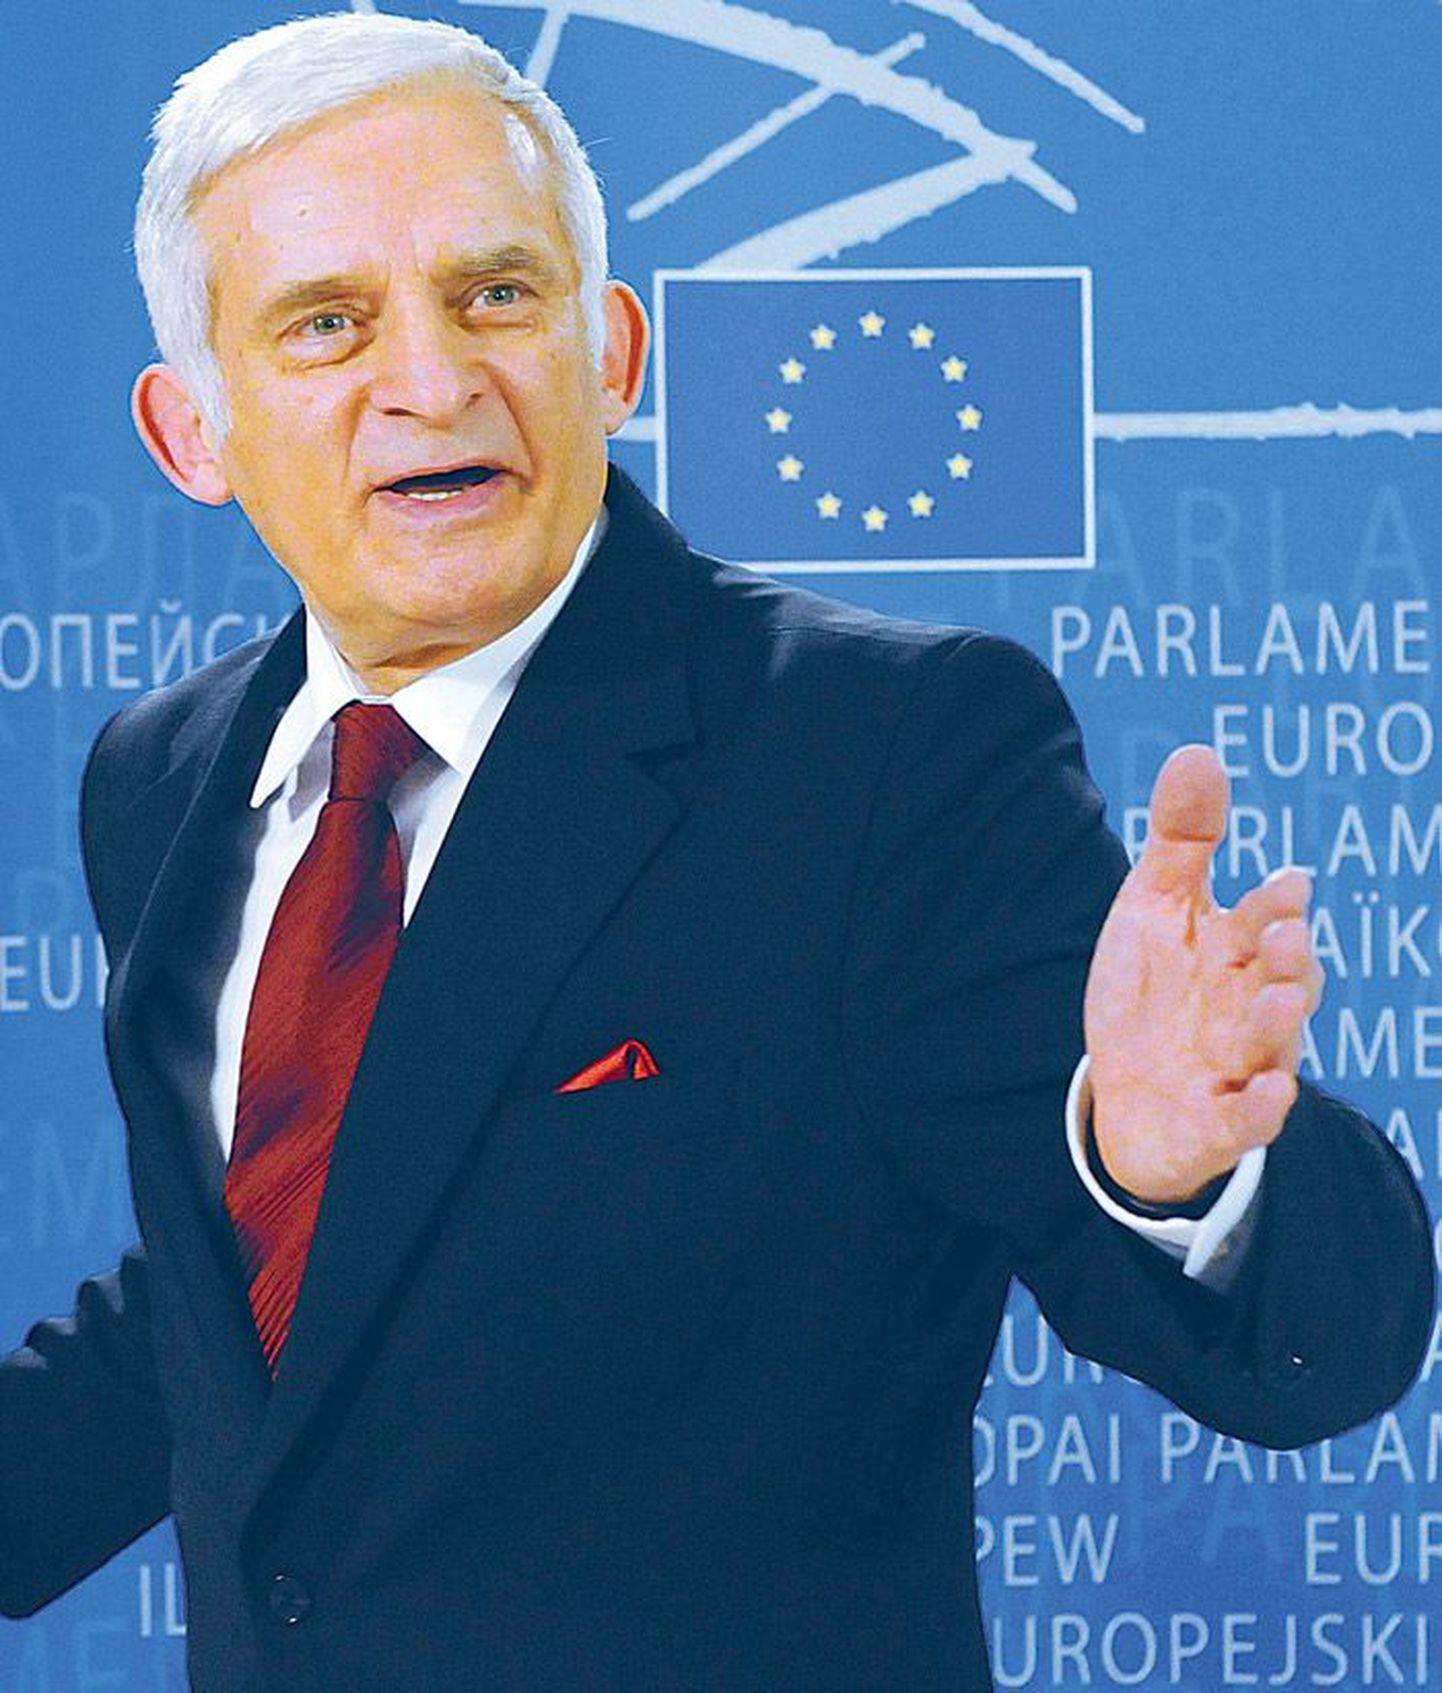 Arvestades, et Euroopa Liidu n-ö uusliikmetest ida poole jääb veel suur tükk Euroopat, Uuraliteni välja, ei nimetaks Jerzy Buzek siinset kanti mitte Ida-Euroopaks, vaid Kesk-Ida-Euroopaks.